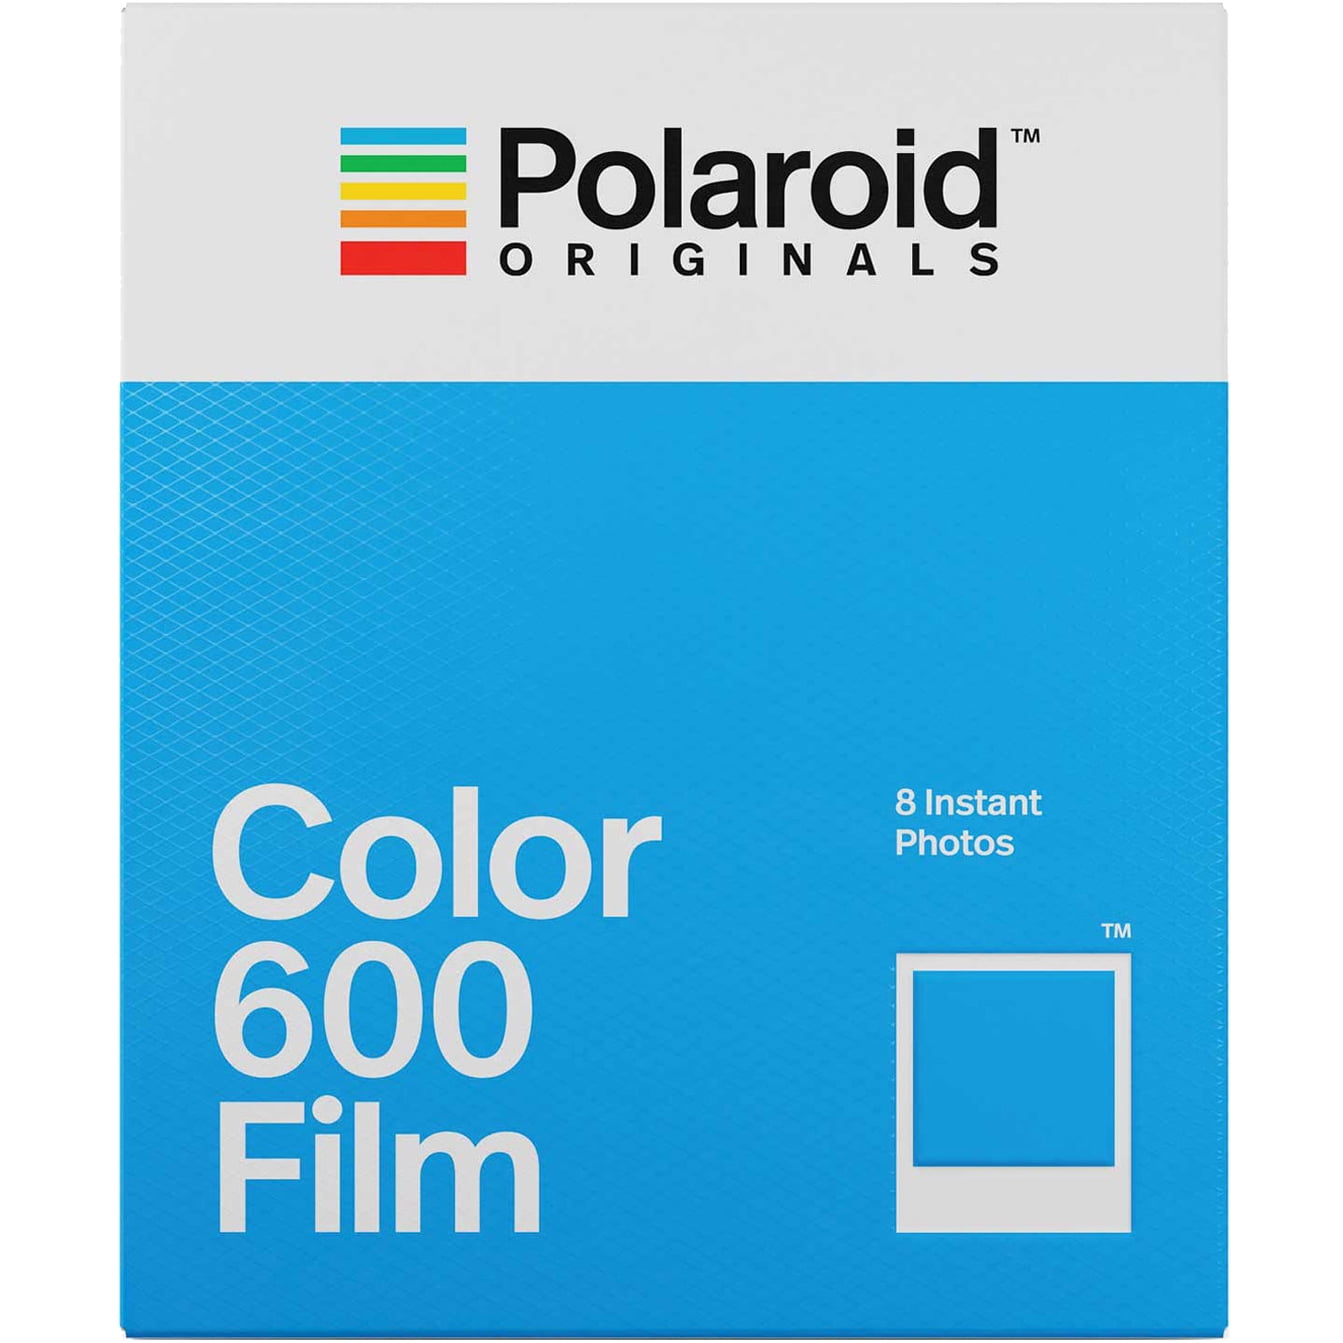 Zegevieren Vertrouwen perspectief Polaroid Originals Color Film for 600 - Walmart.com